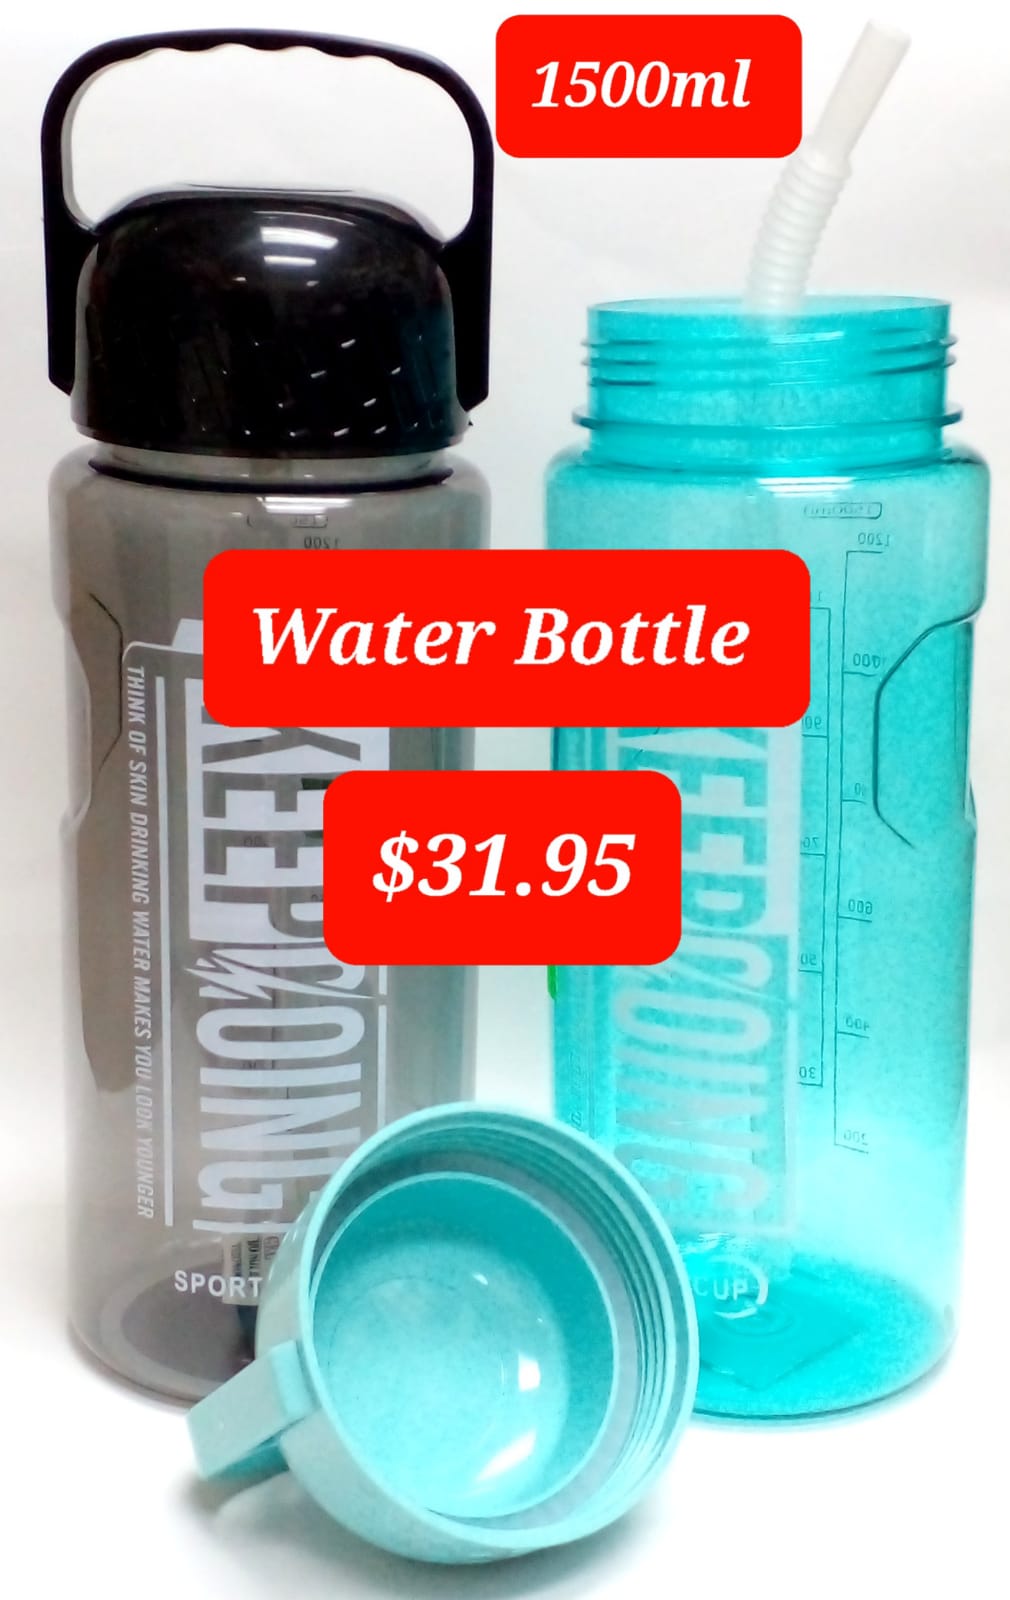 1500ml Water bottle